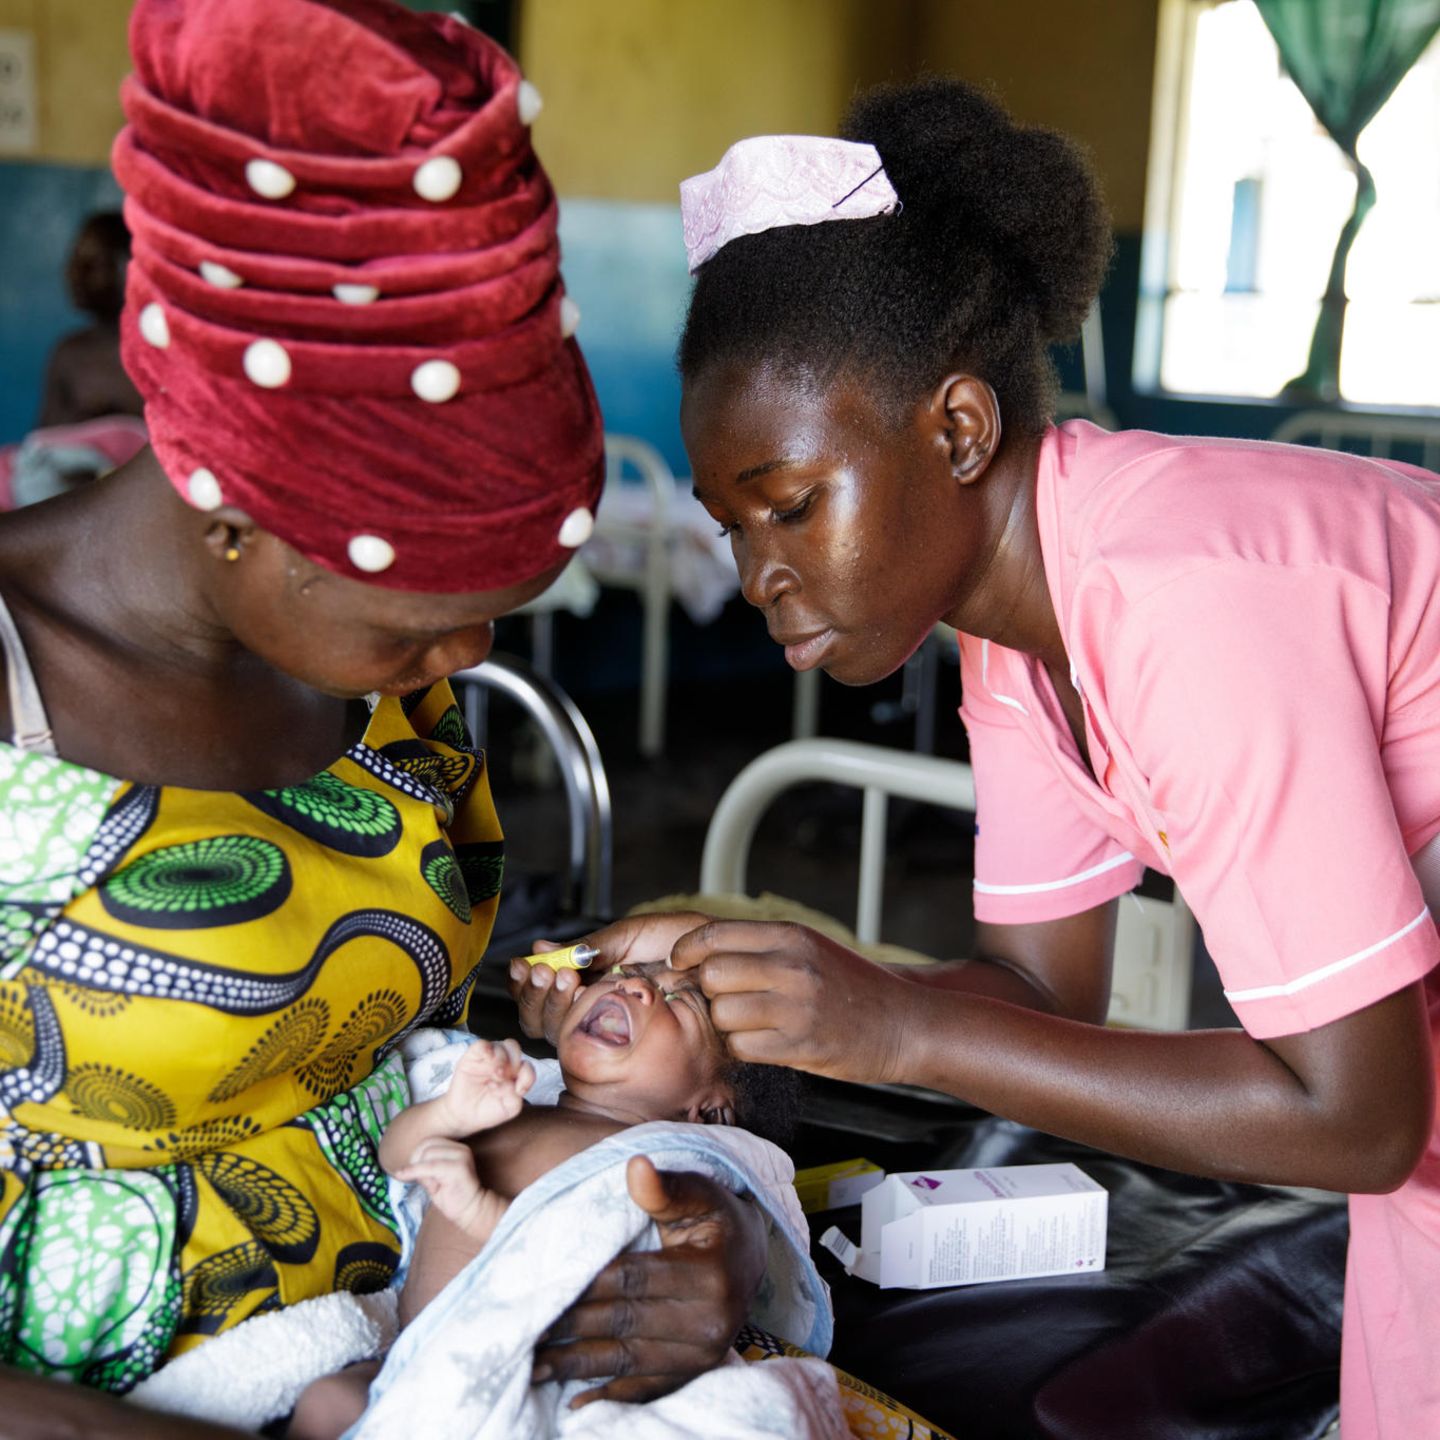 Geburtshilfe weltweit: Hebamme Munguci Hope Mercy im Gesundheitszentrum mit Baby